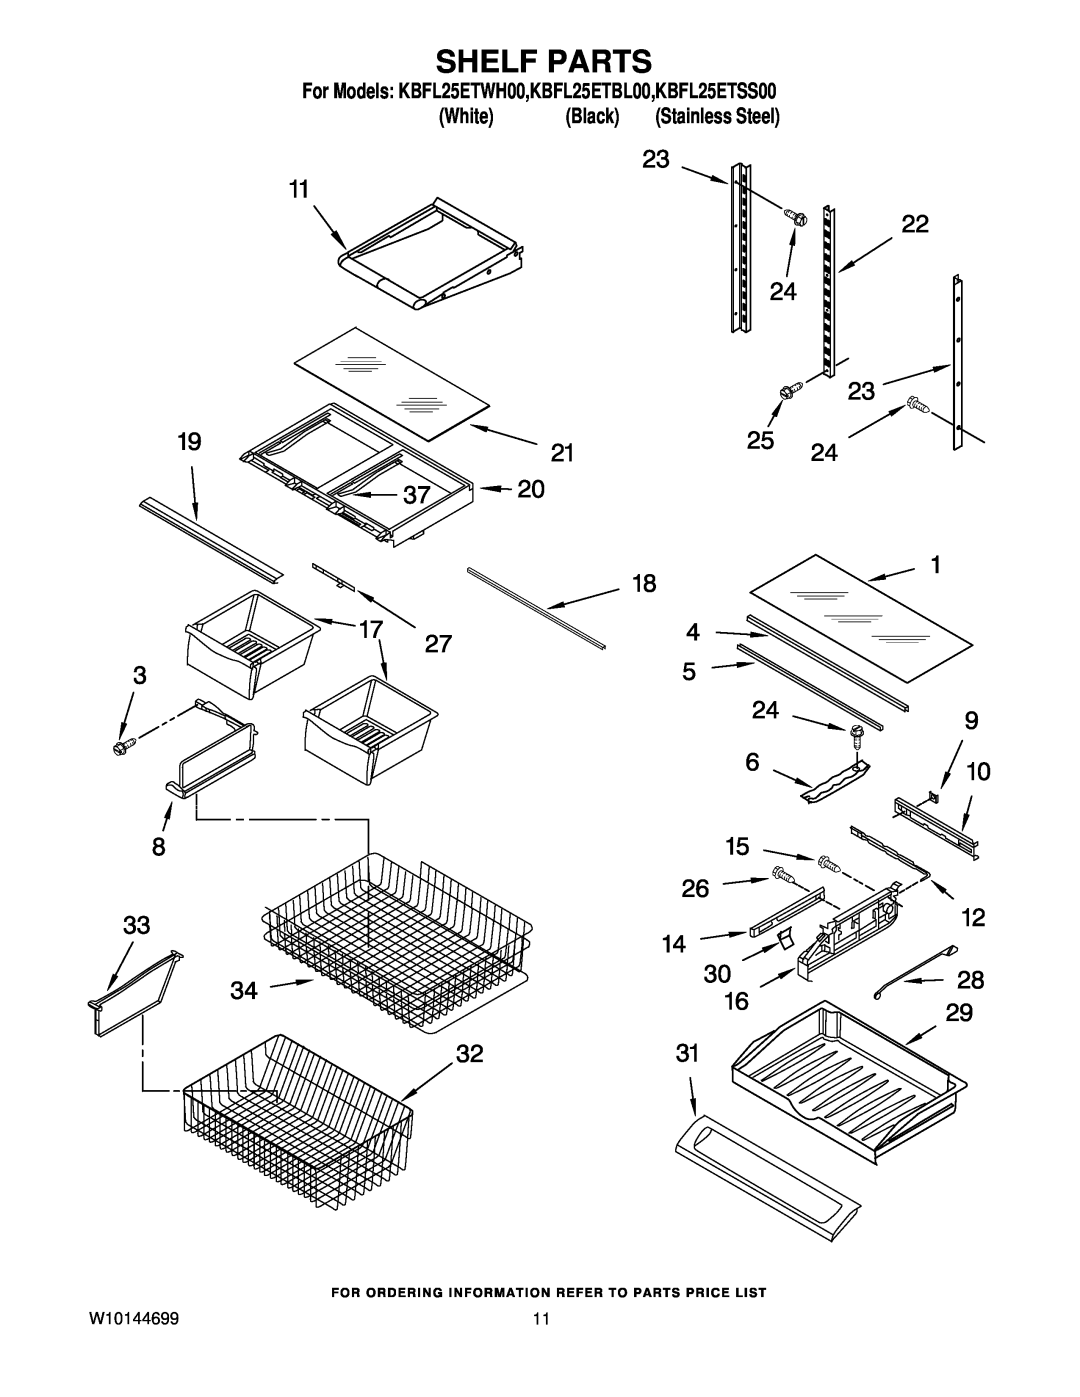 KitchenAid manual Shelf Parts, For Models KBFL25ETWH00,KBFL25ETBL00,KBFL25ETSS00, White, Black, Stainless Steel 